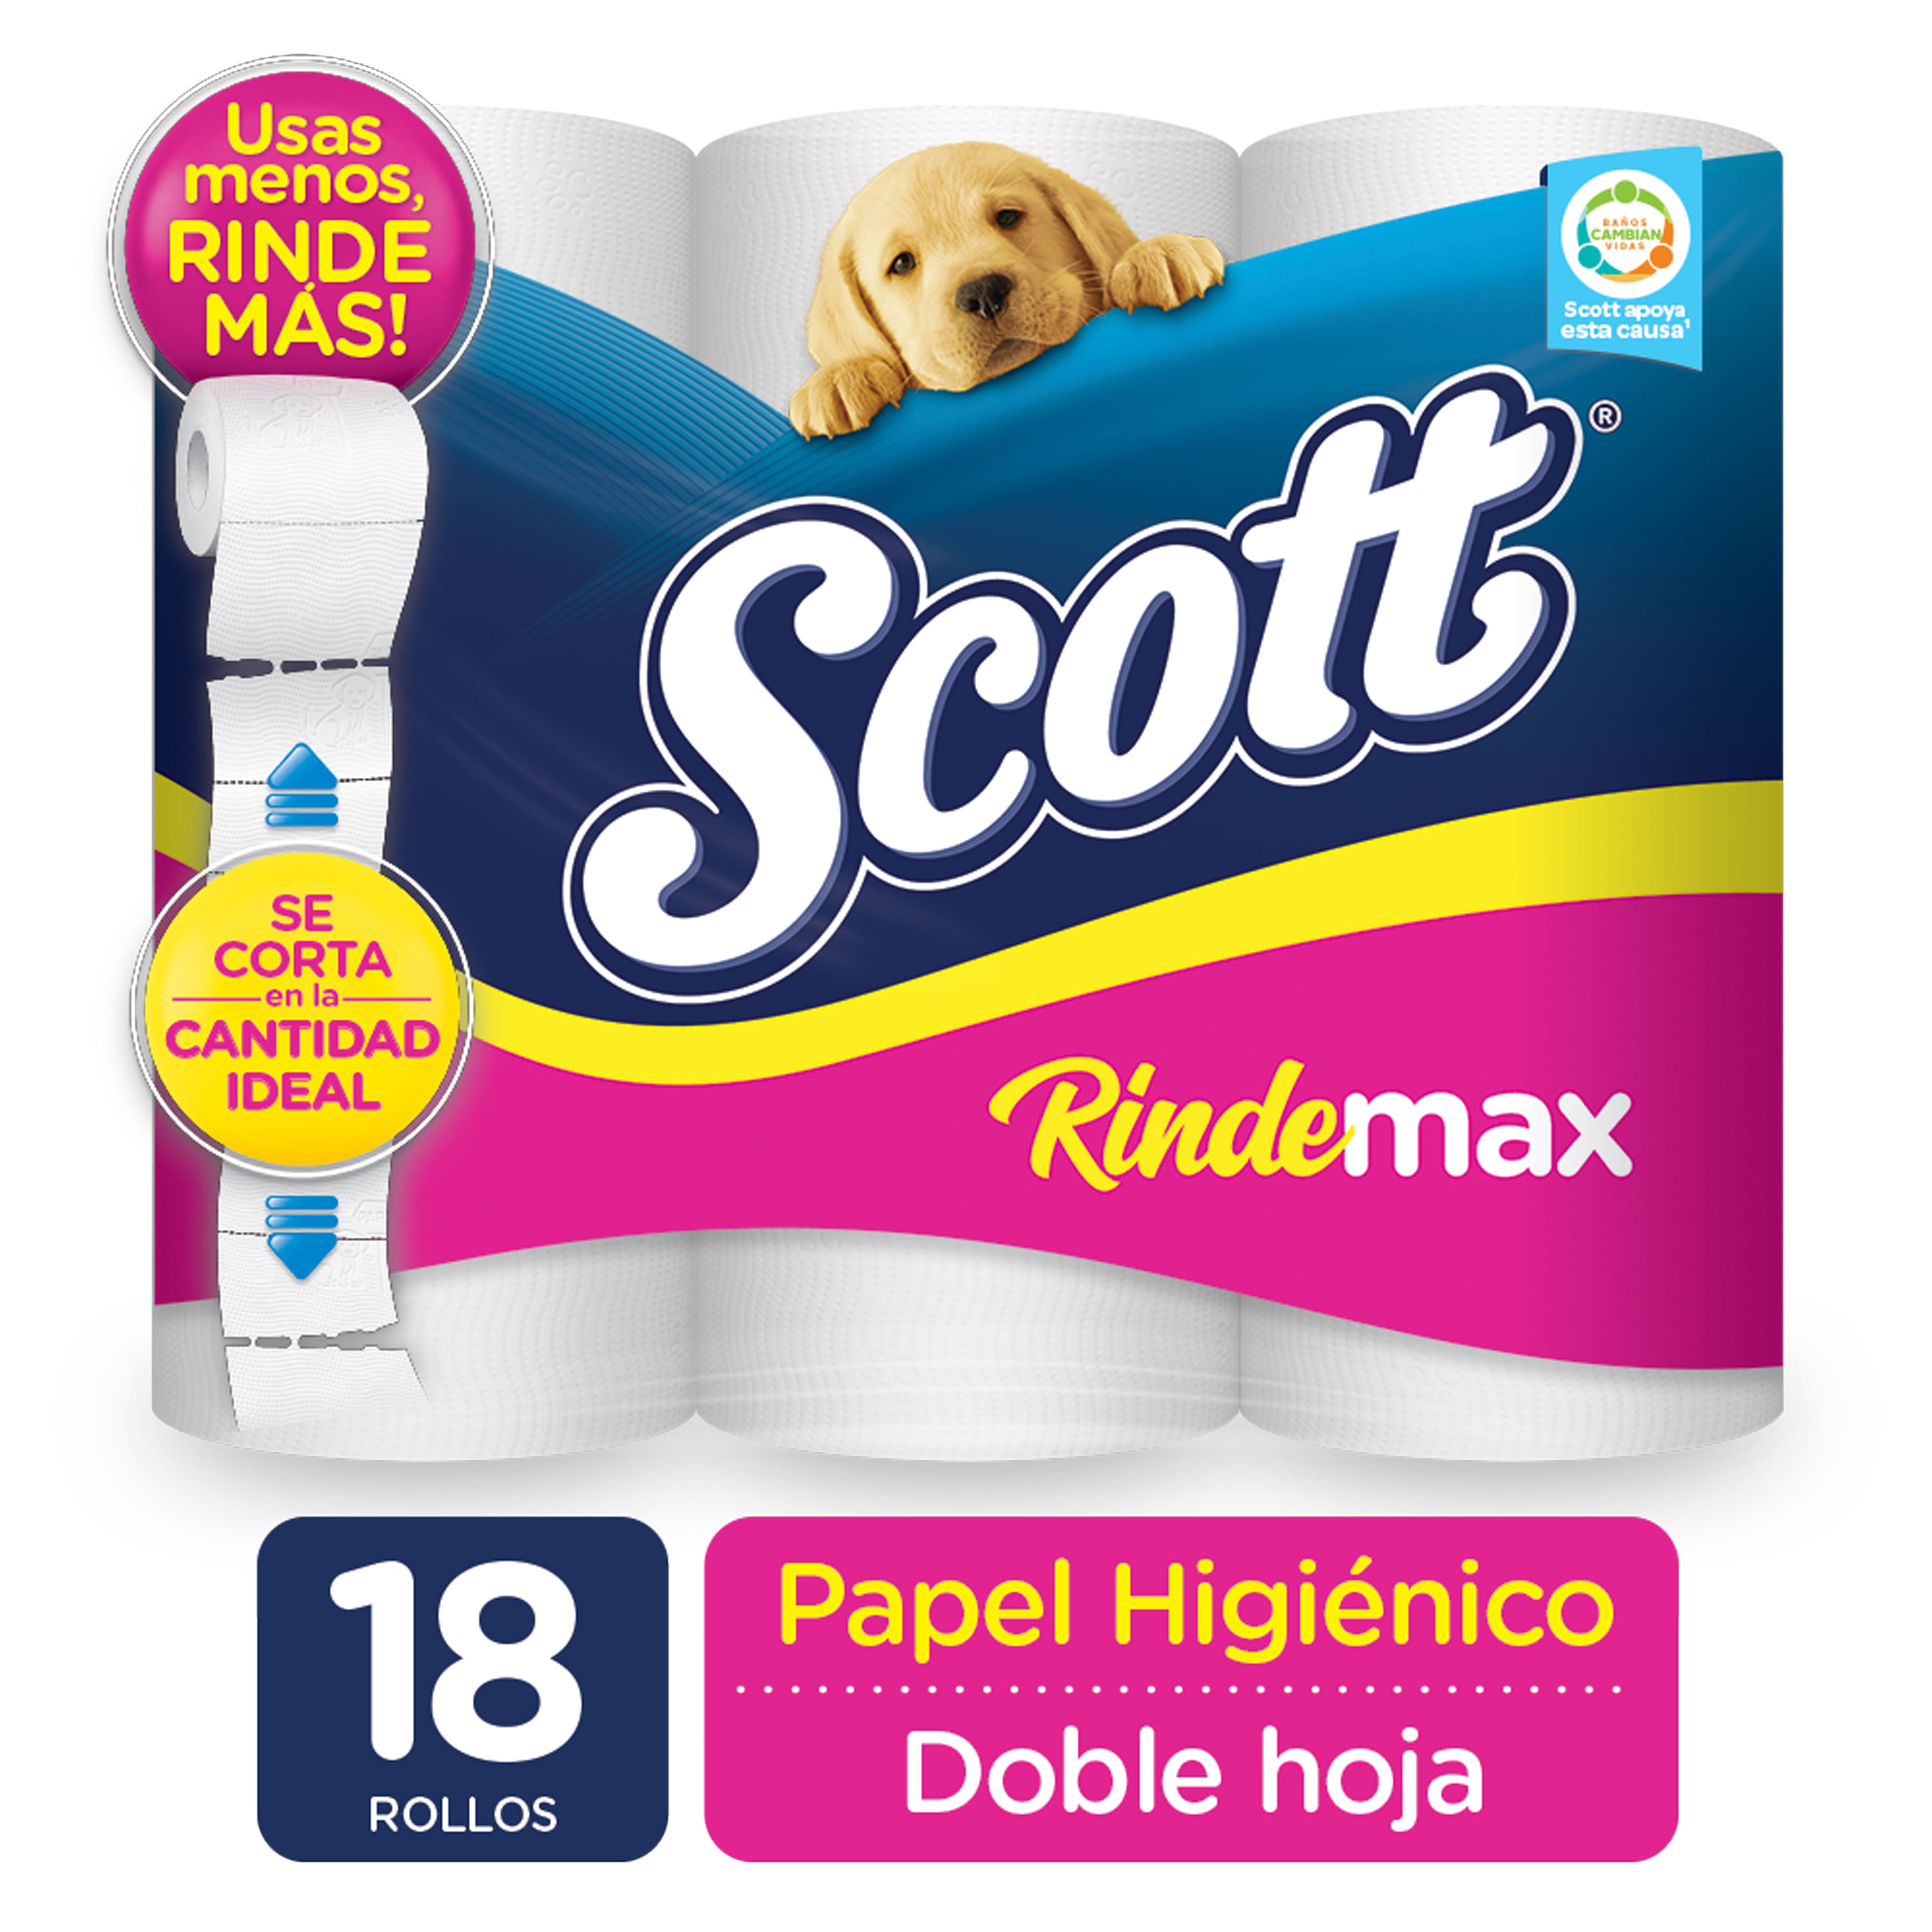 ▷ Chollo Pack x48 Rollos Papel higiénico Scottex Megarollo por sólo 23,98€  con descuento automático ¡Sólo 0,50€ por rollo!